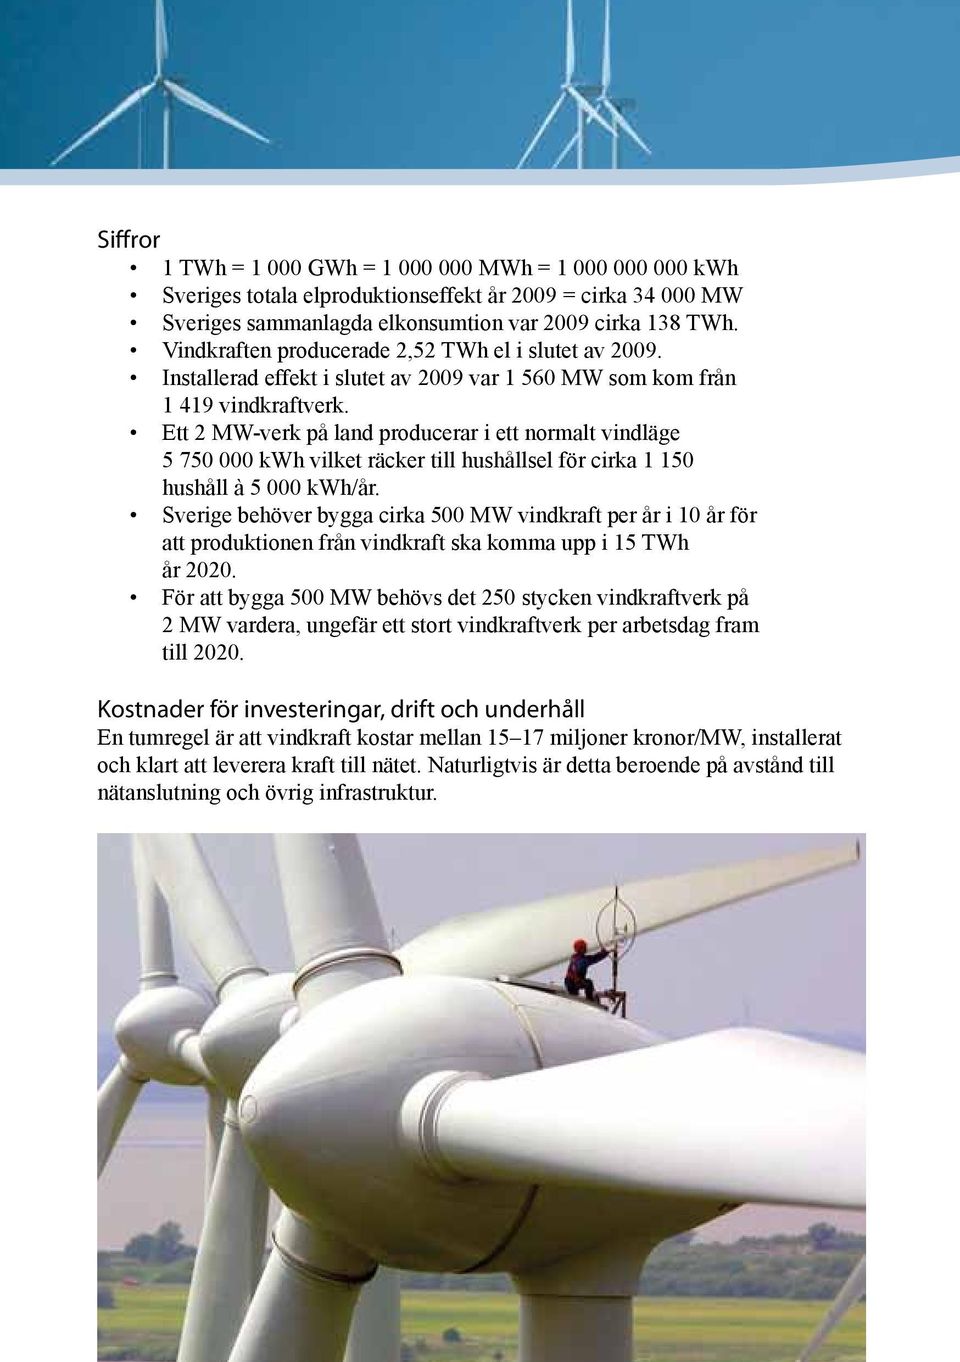 Ett 2 MW-verk på land producerar i ett normalt vindläge 5 750 000 kwh vilket räcker till hushållsel för cirka 1 150 hushåll à 5 000 kwh/år.